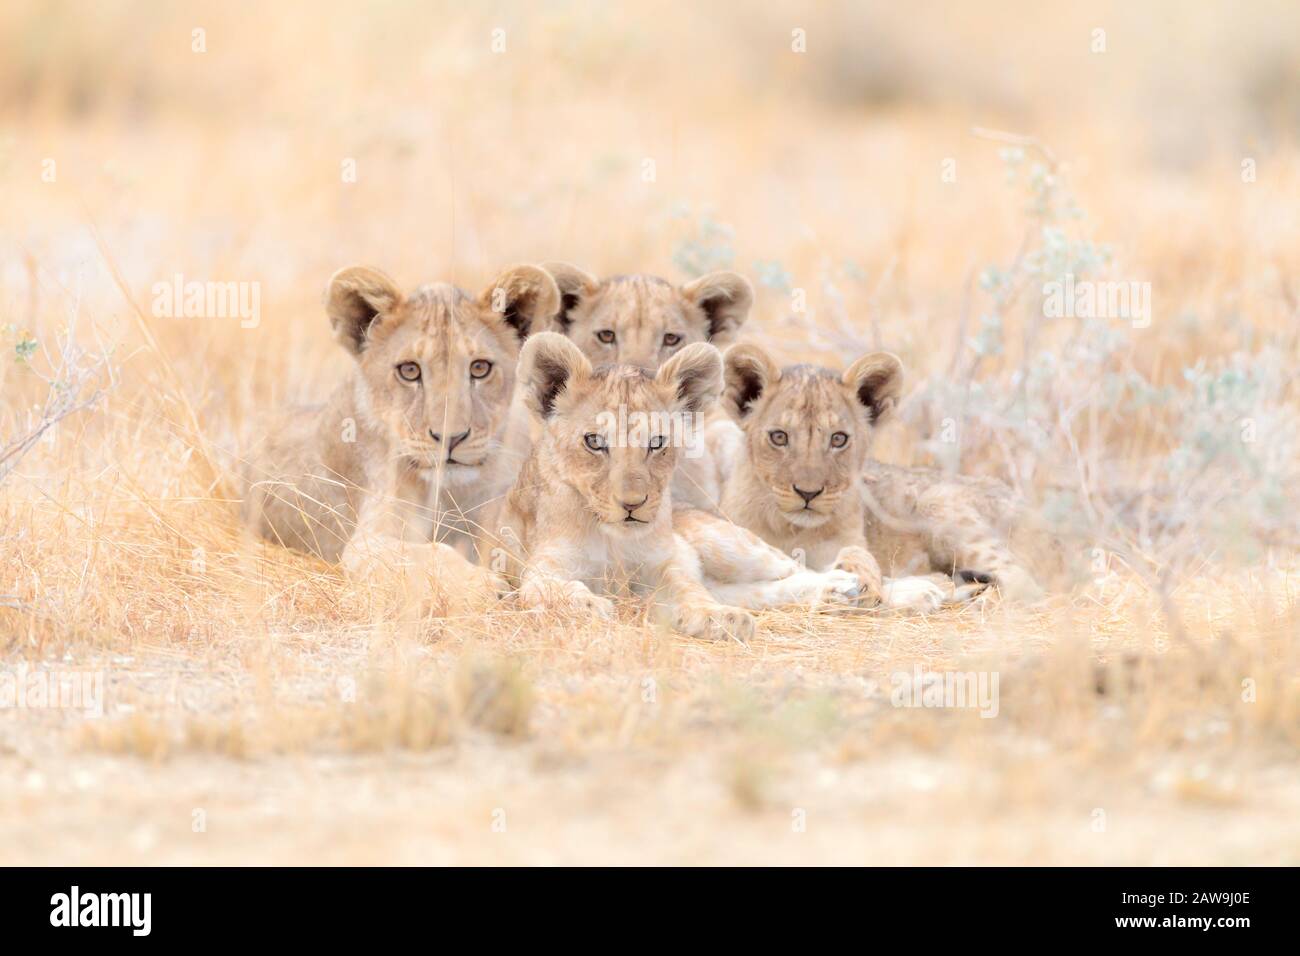 Mignons bavettes de lion, bébé de lion dans le désert de l'Afrique Banque D'Images